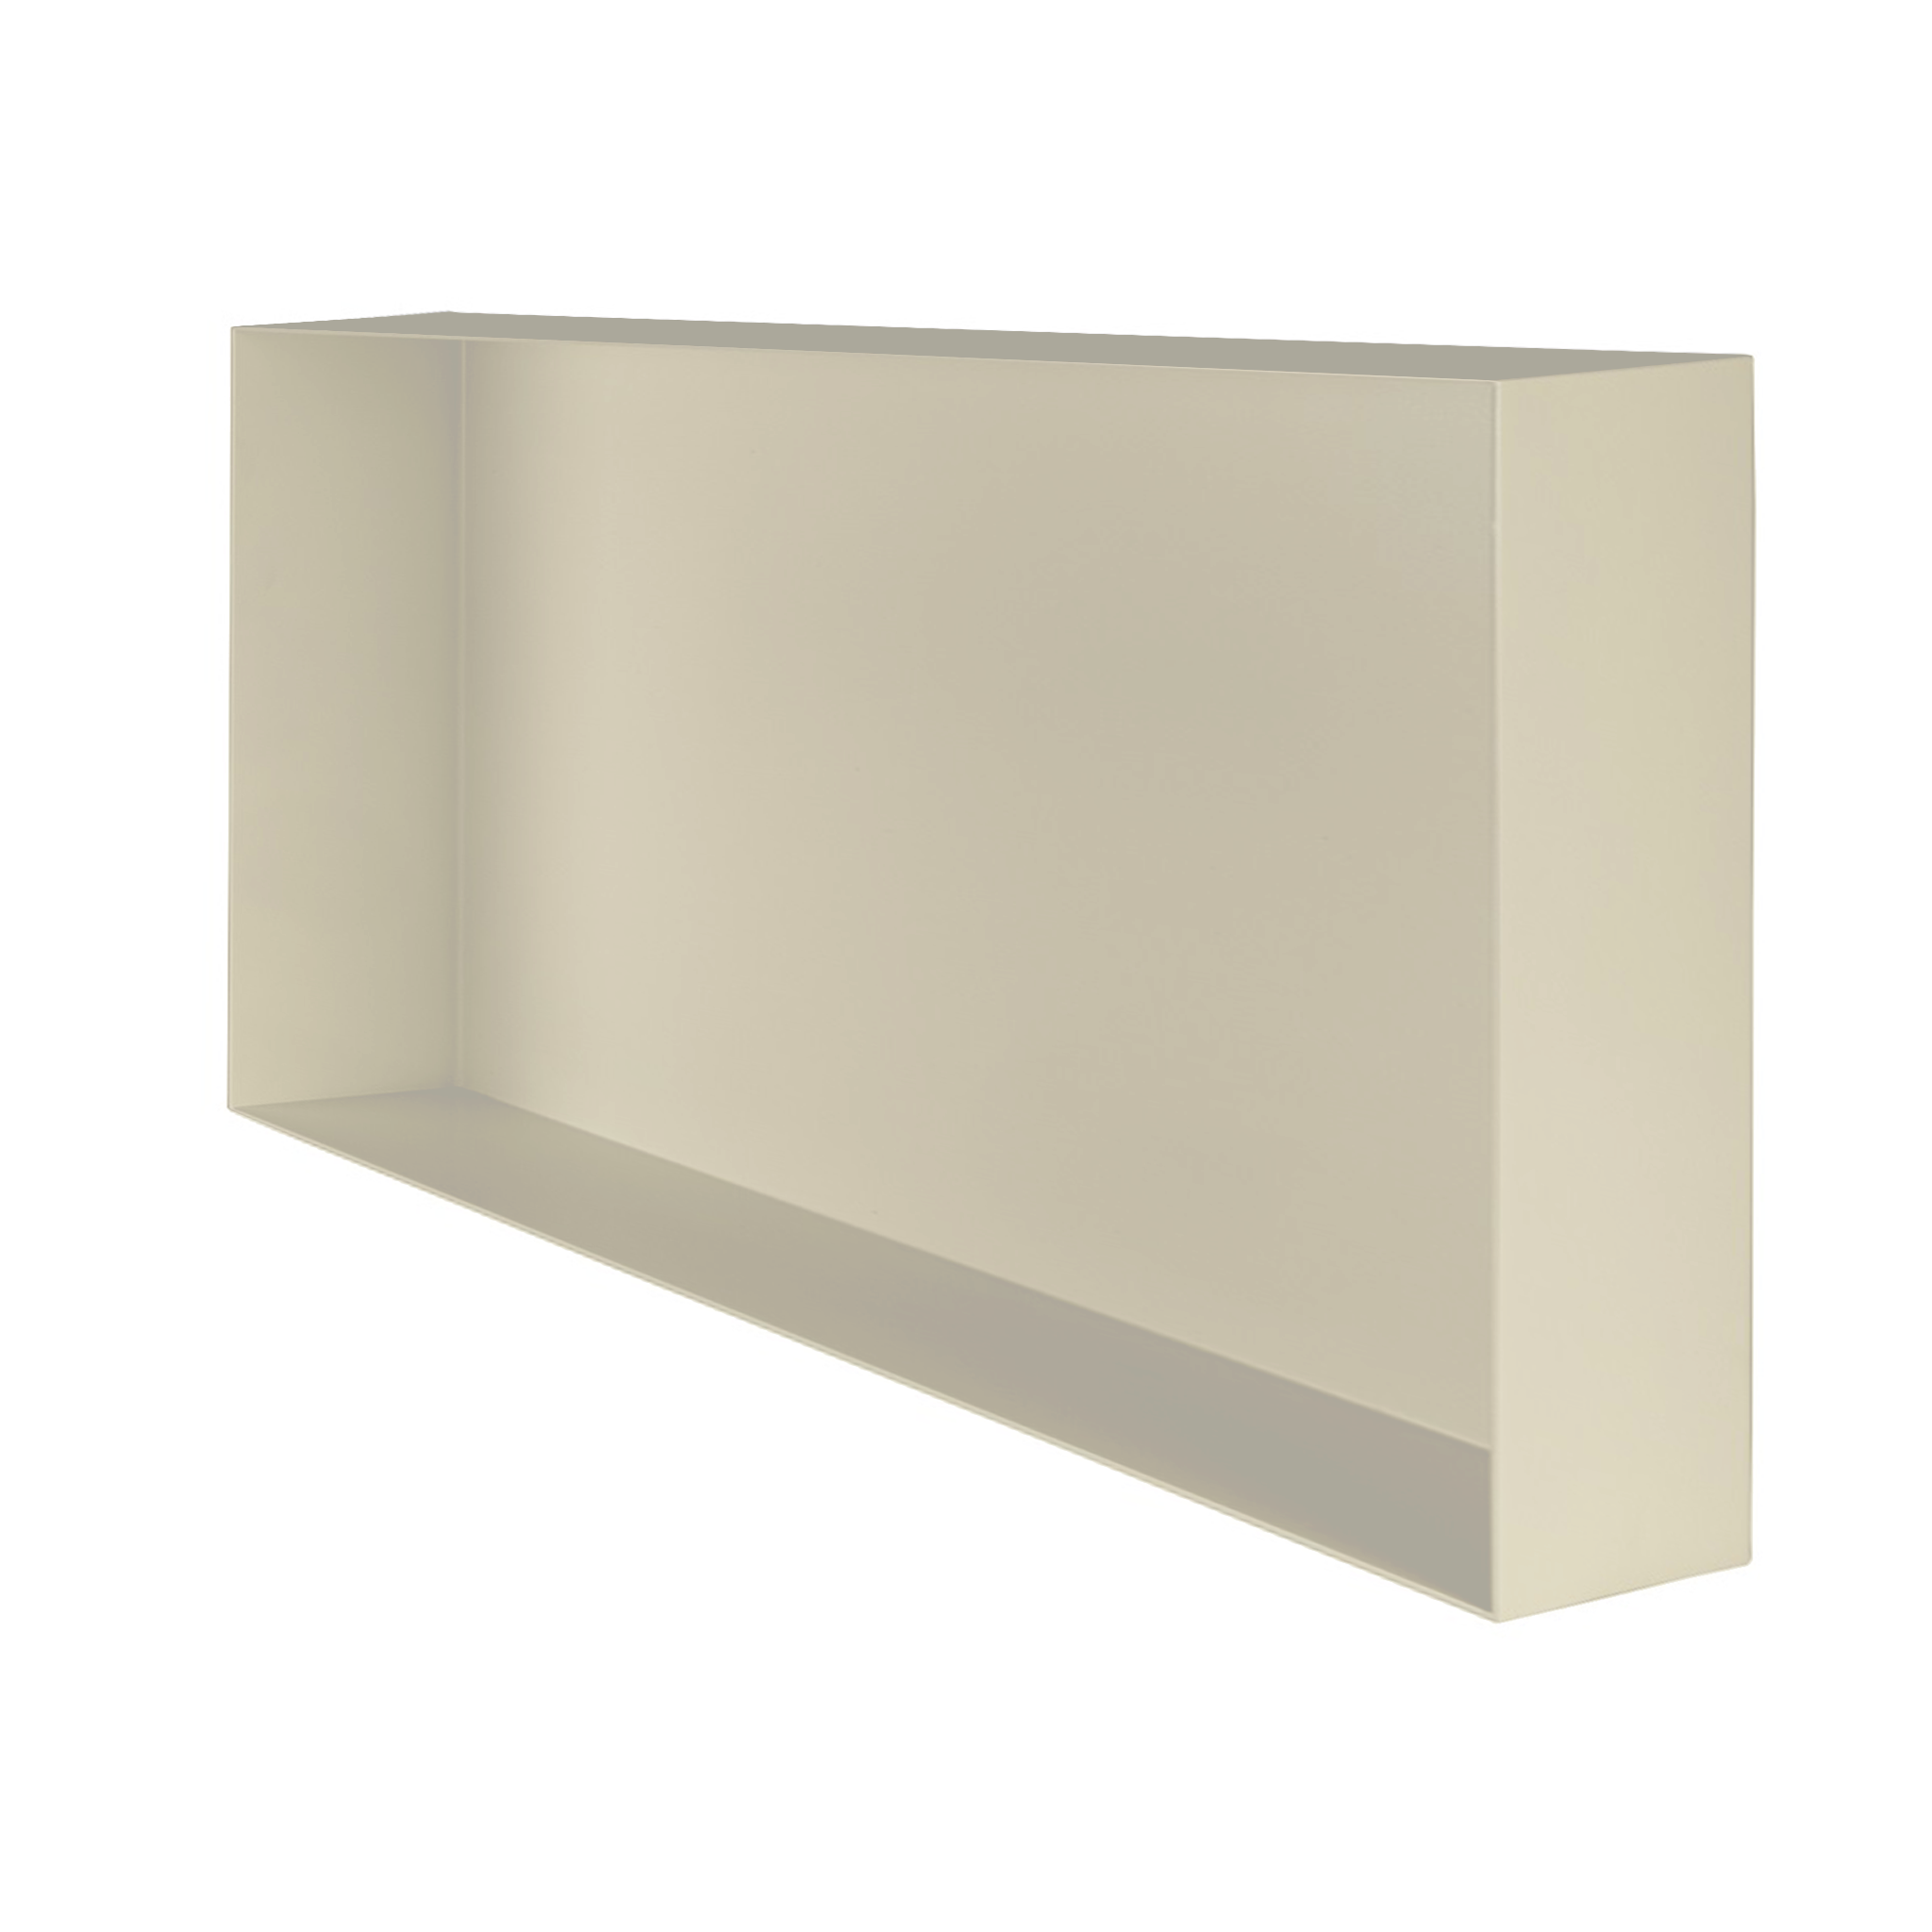 Valli Home – V-Box, Nicchia portaoggetti in Metallo smaltato color Grigio Chiarissimo KK62, Misura 30X60 P. 10 cm – V-BOX.MLLO.30X60.62